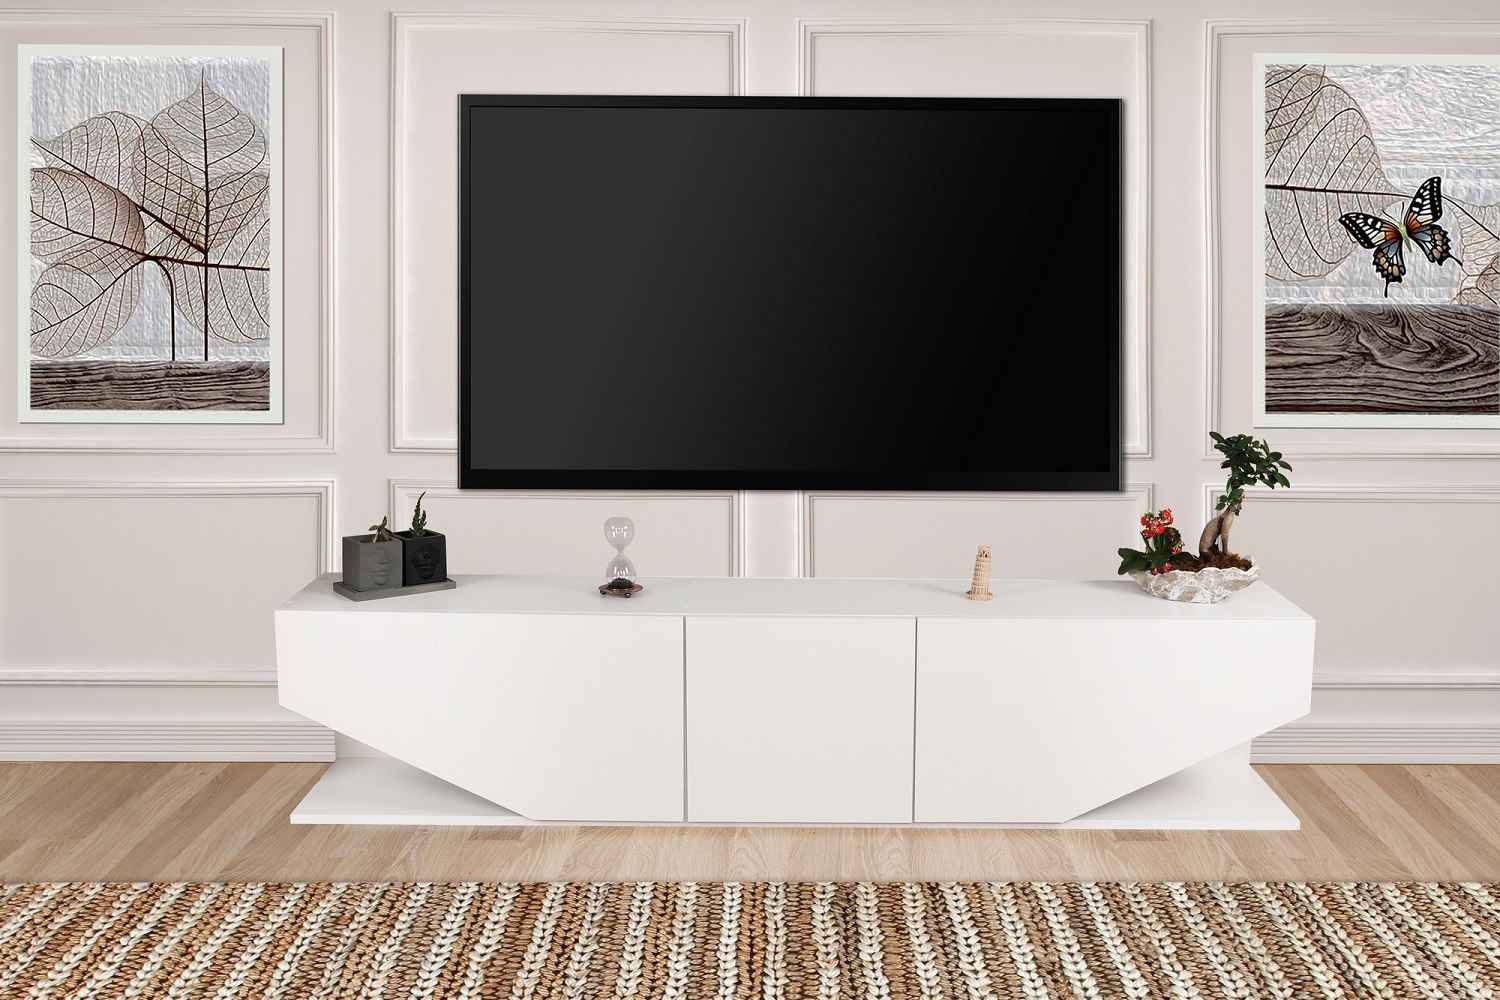 Sofahouse Dizajnový TV stolík Layla 180 cm biely